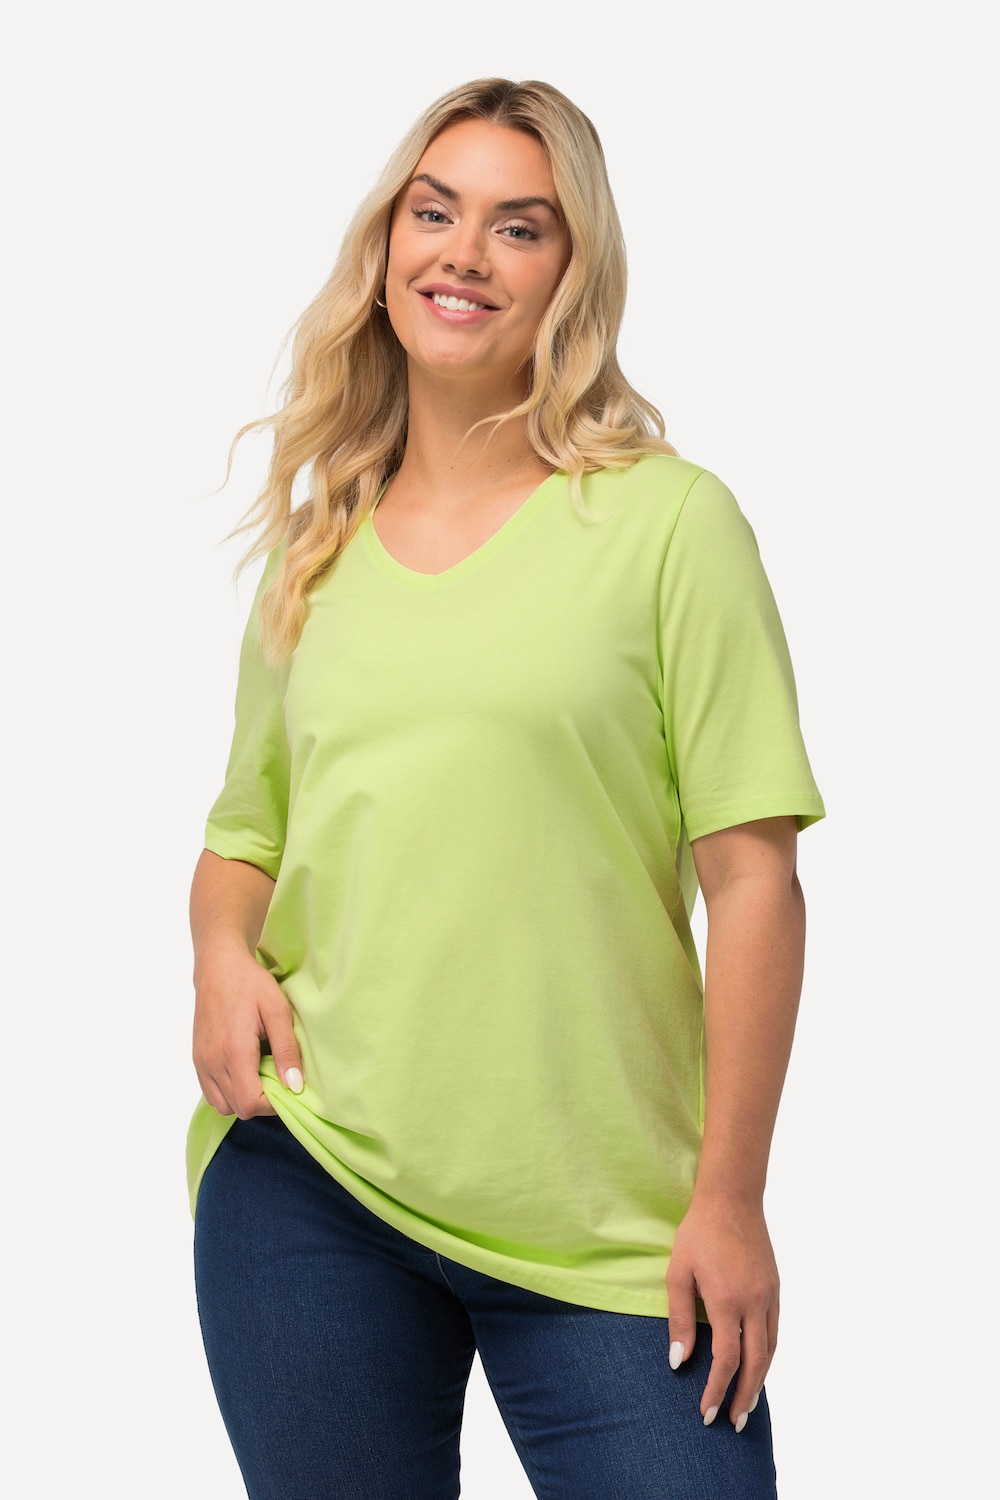 Grote Maten T-shirt, Dames, groen, Maat: 42/44, Katoen, Ulla Popken